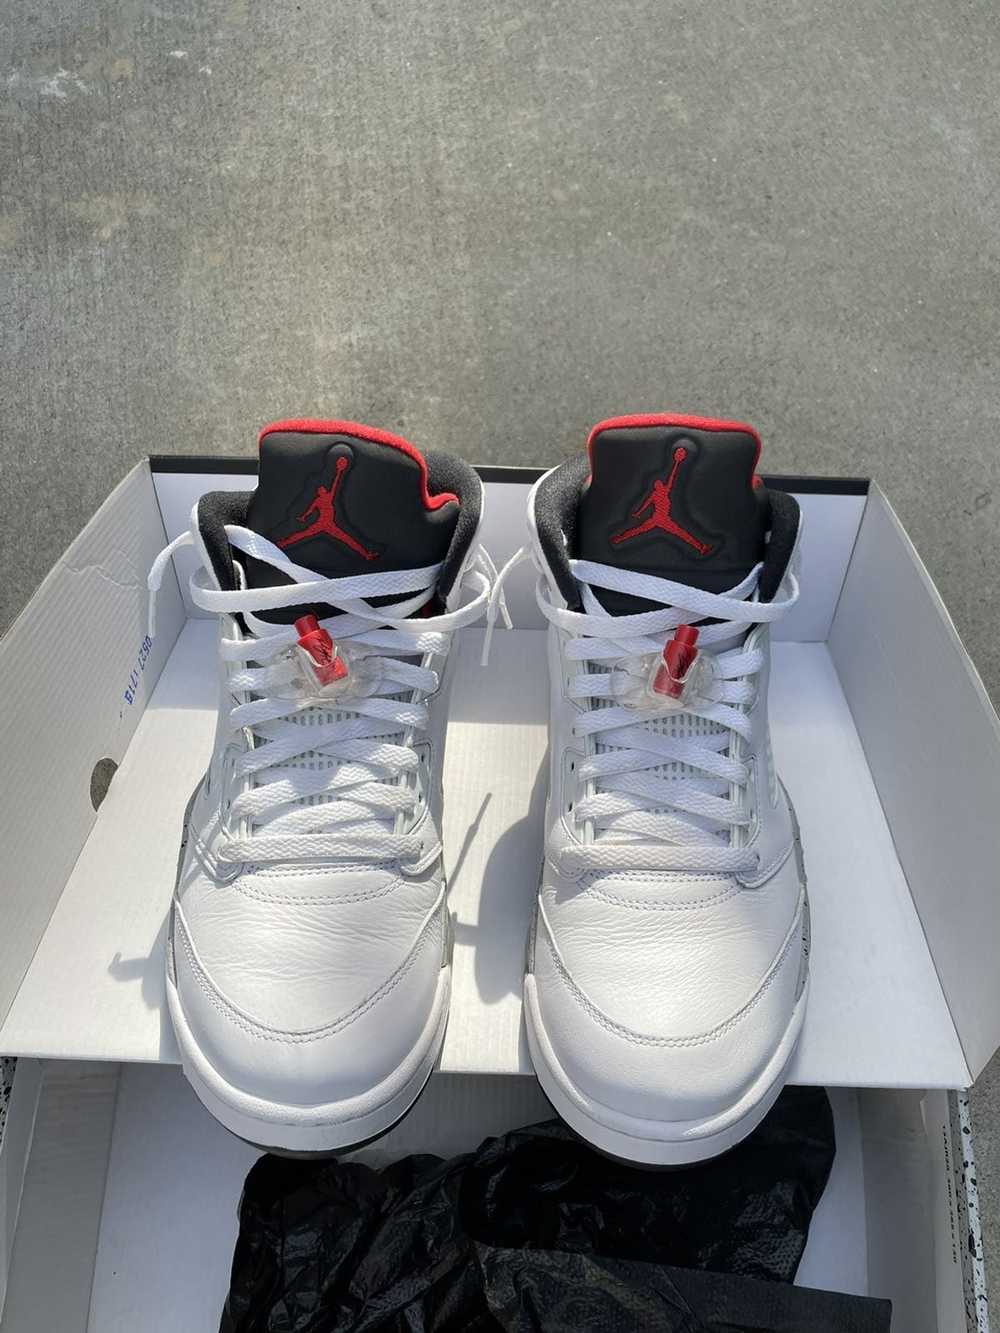 Jordan Brand × Nike Jordan 5 Retro - image 1